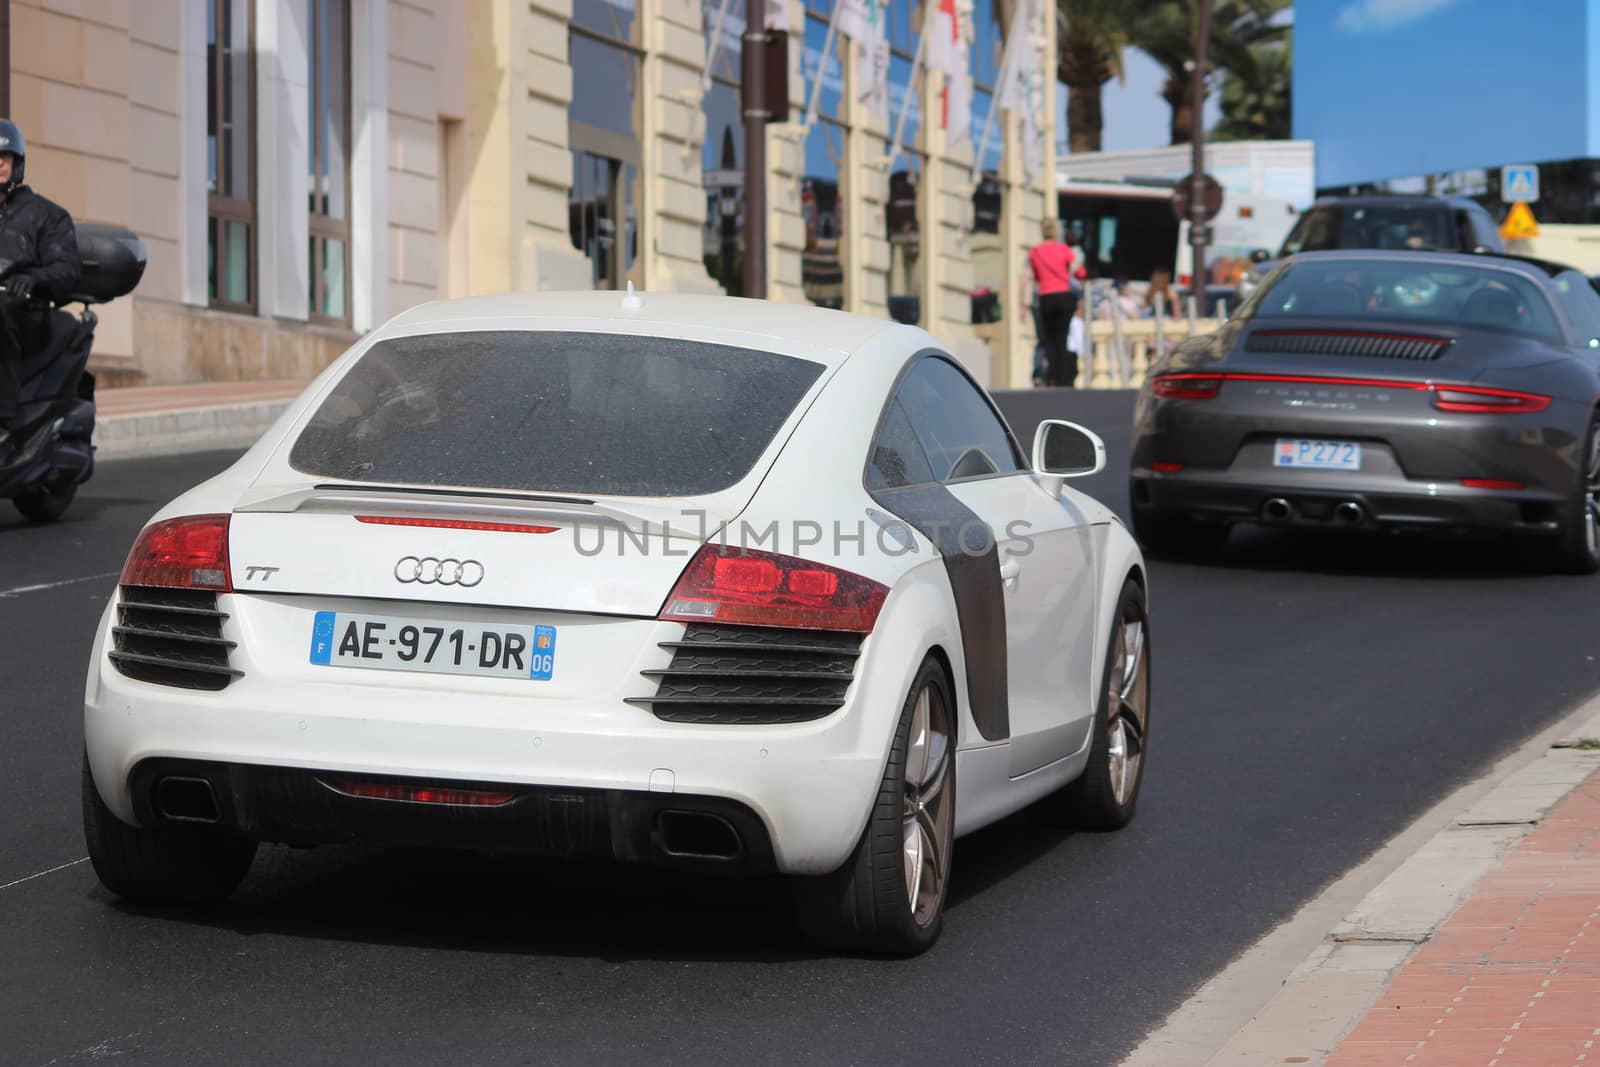 Dirty Audi TT in Monte-Carlo, Monaco by bensib